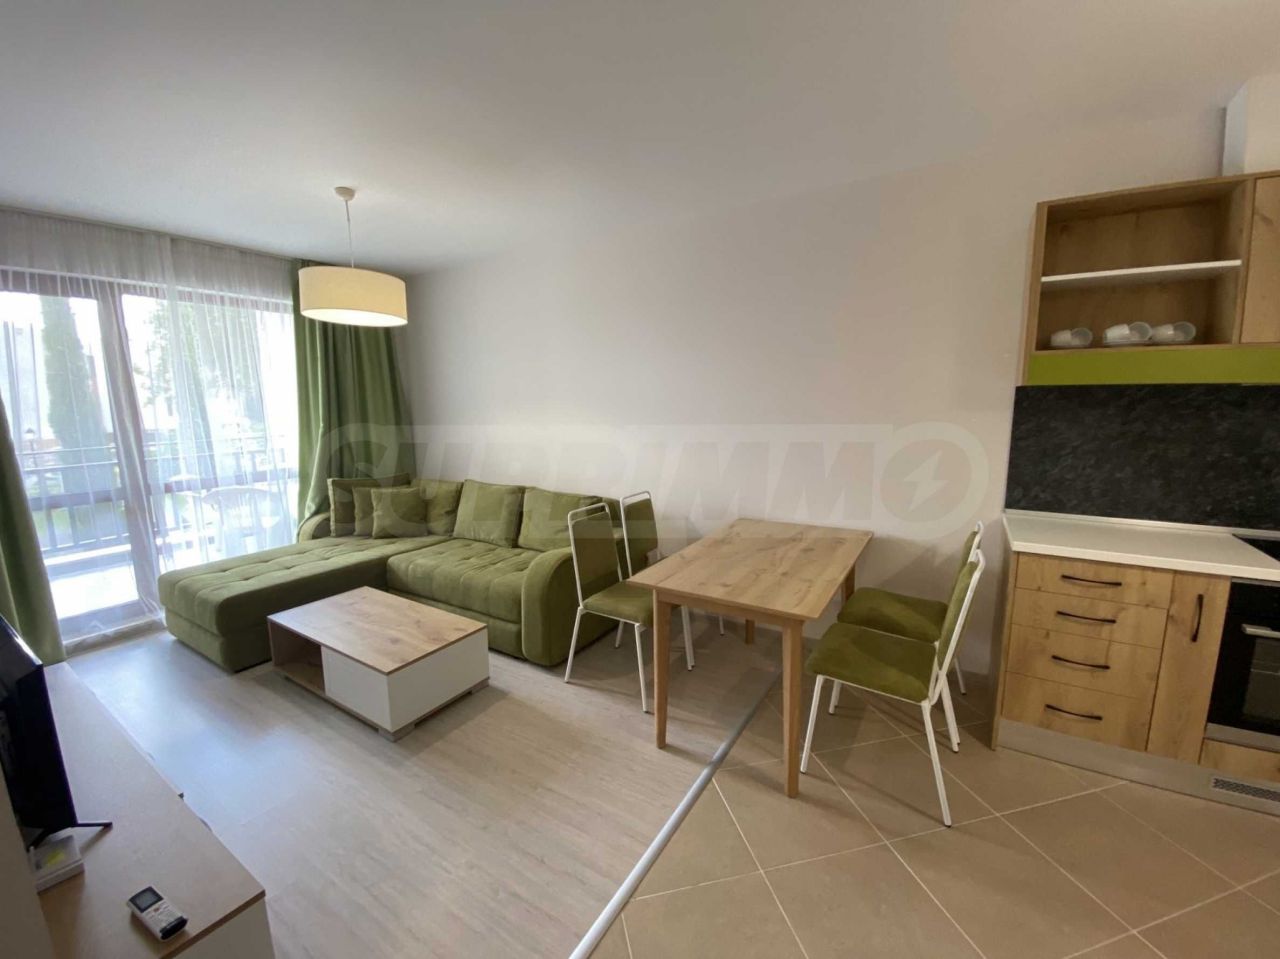 Apartment in Balchik, Bulgaria, 108 sq.m - picture 1